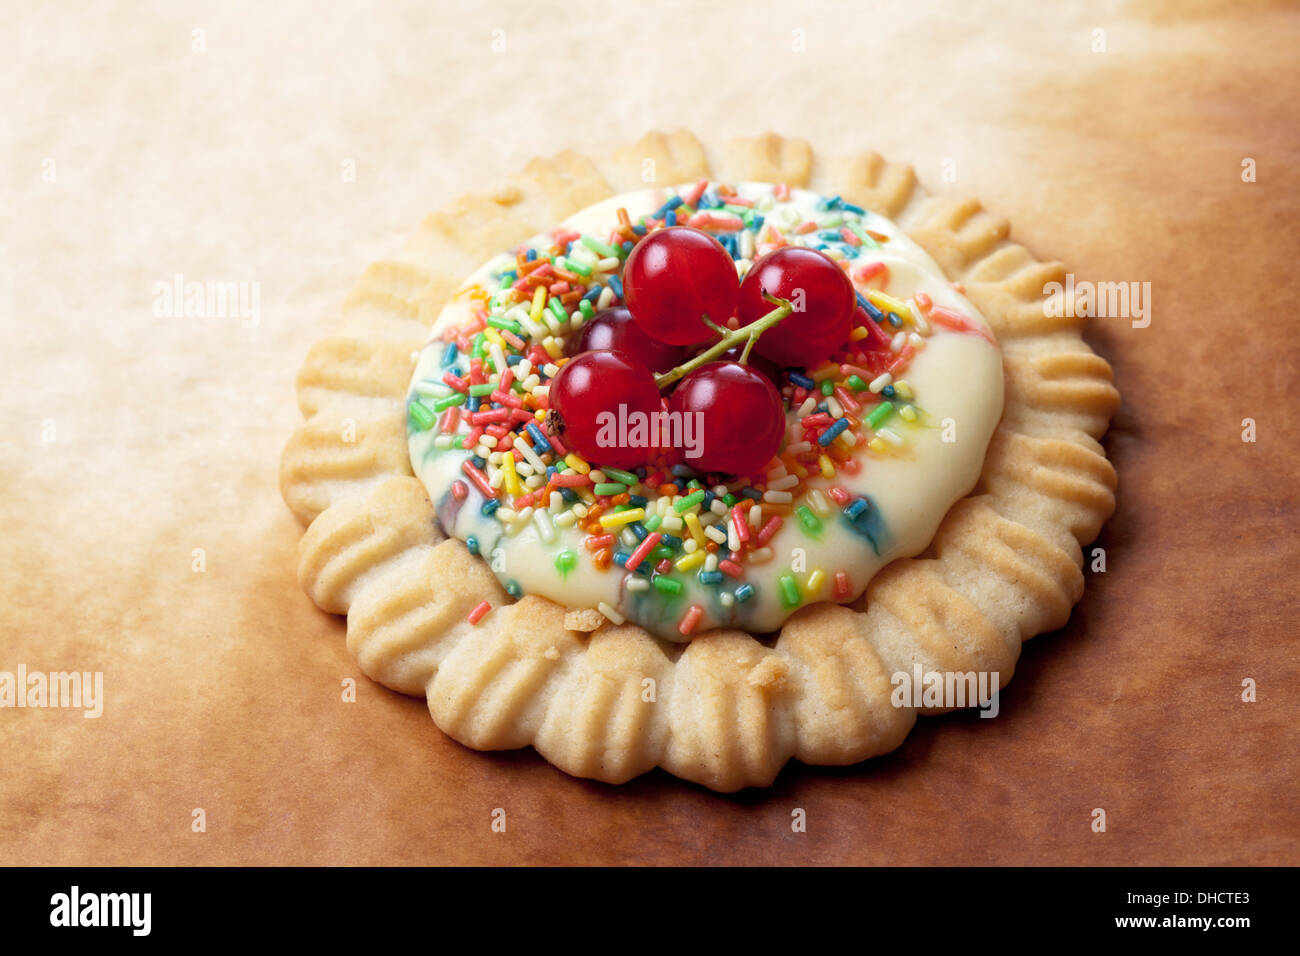 Torta con budino alla vaniglia, ribes rosso e granelli di zucchero, studio shot Foto Stock